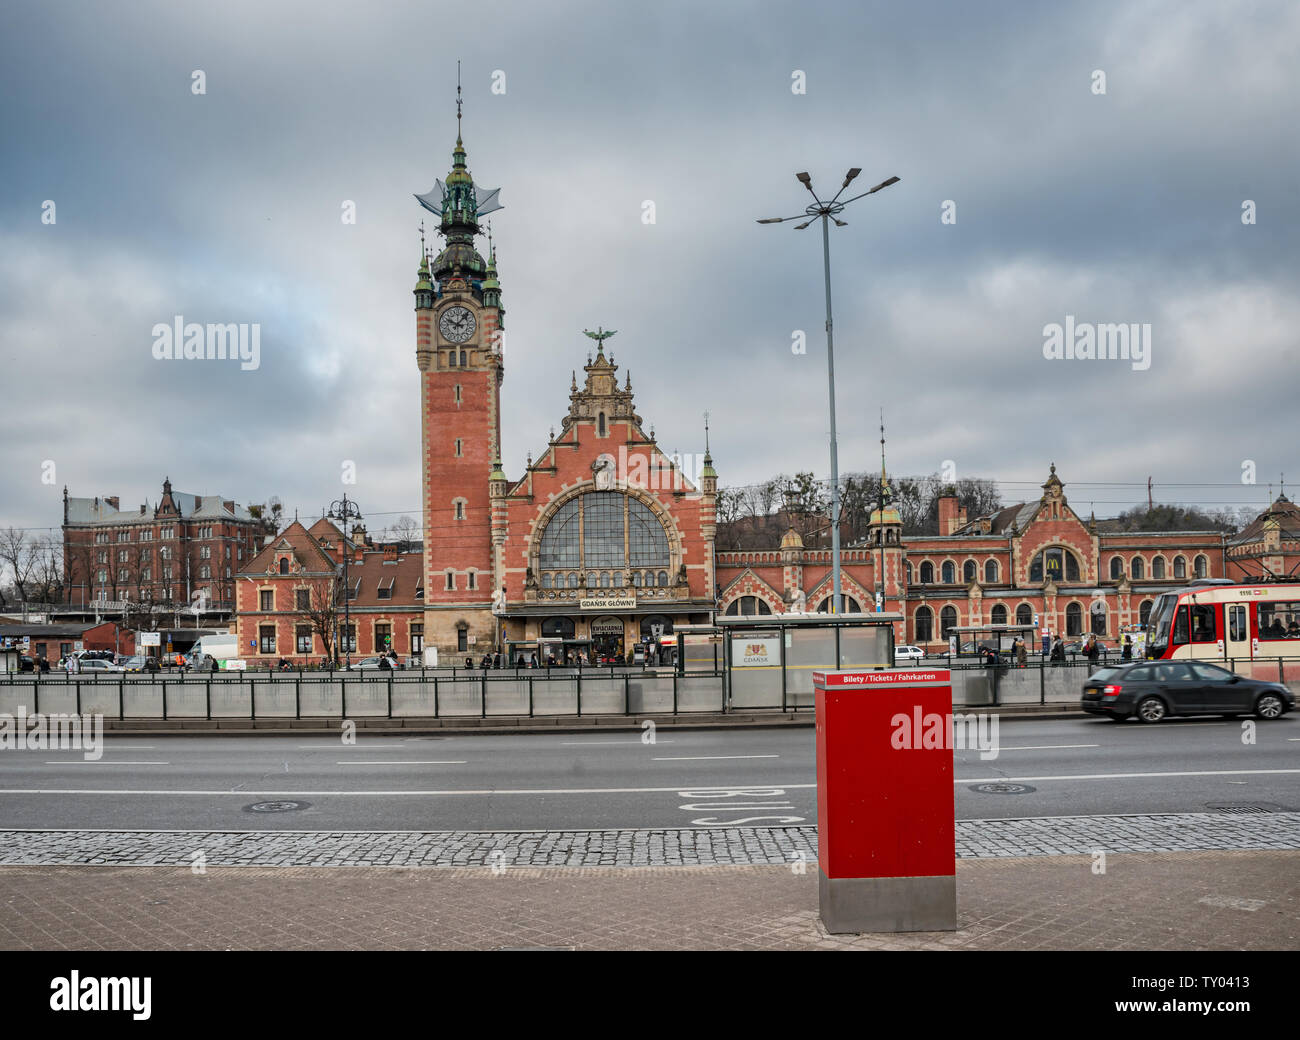 Danzig, Polen - Feb 14, 2019: Blick auf das historische Ende des 19. Jahrhunderts Hauptbahnhof Gebäude in Danzig, Polen. Stockfoto